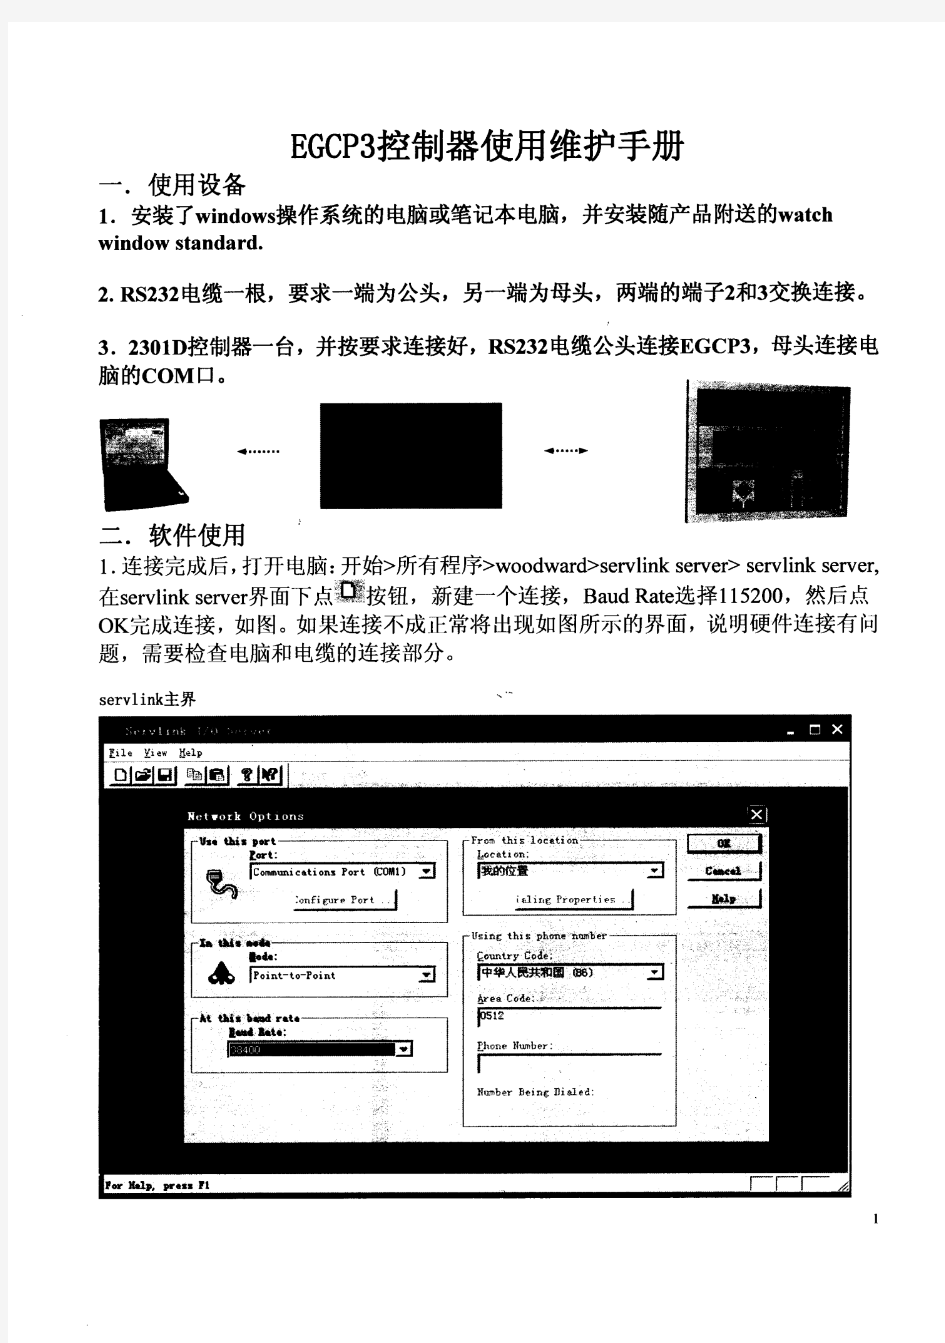 EGCP-3手册(中文)